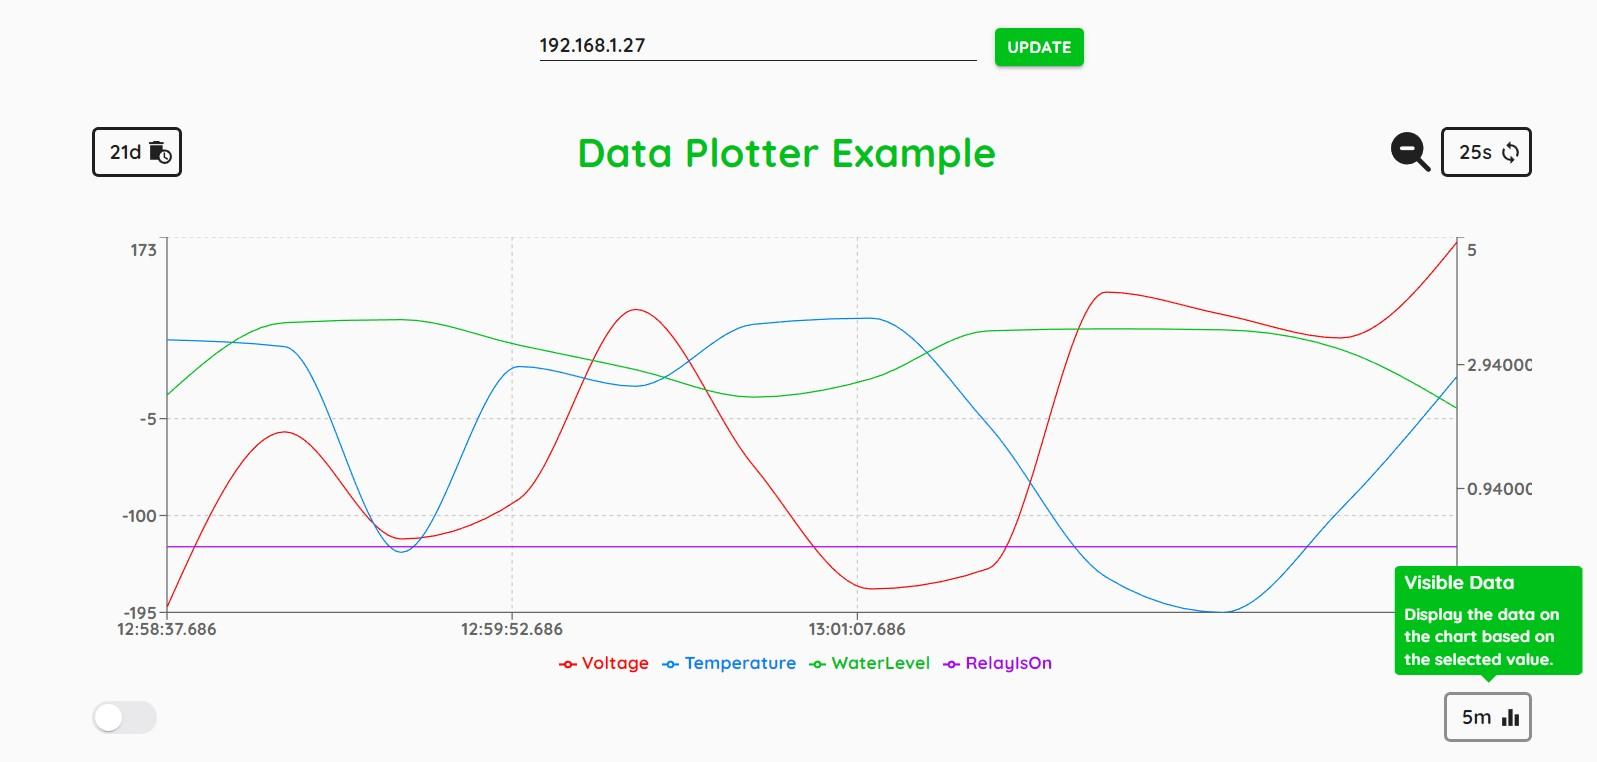 Data Plotter Visible Data